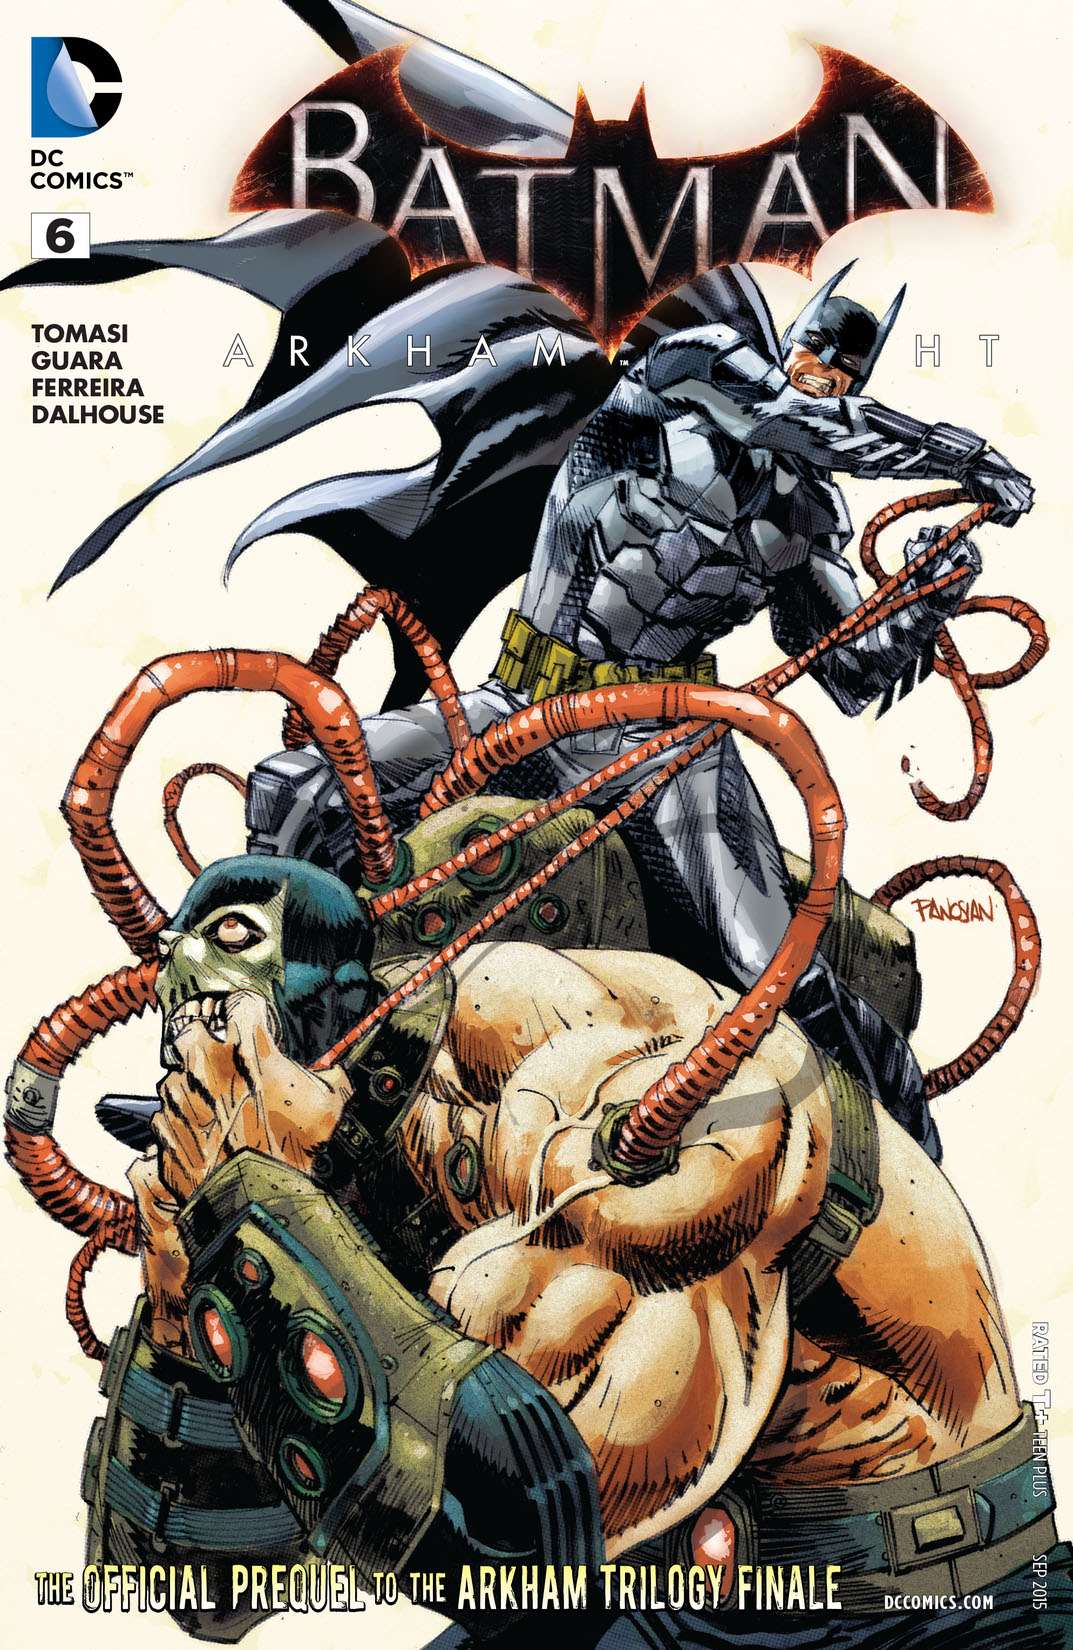 Batman: Arkham Knight #6 preview images